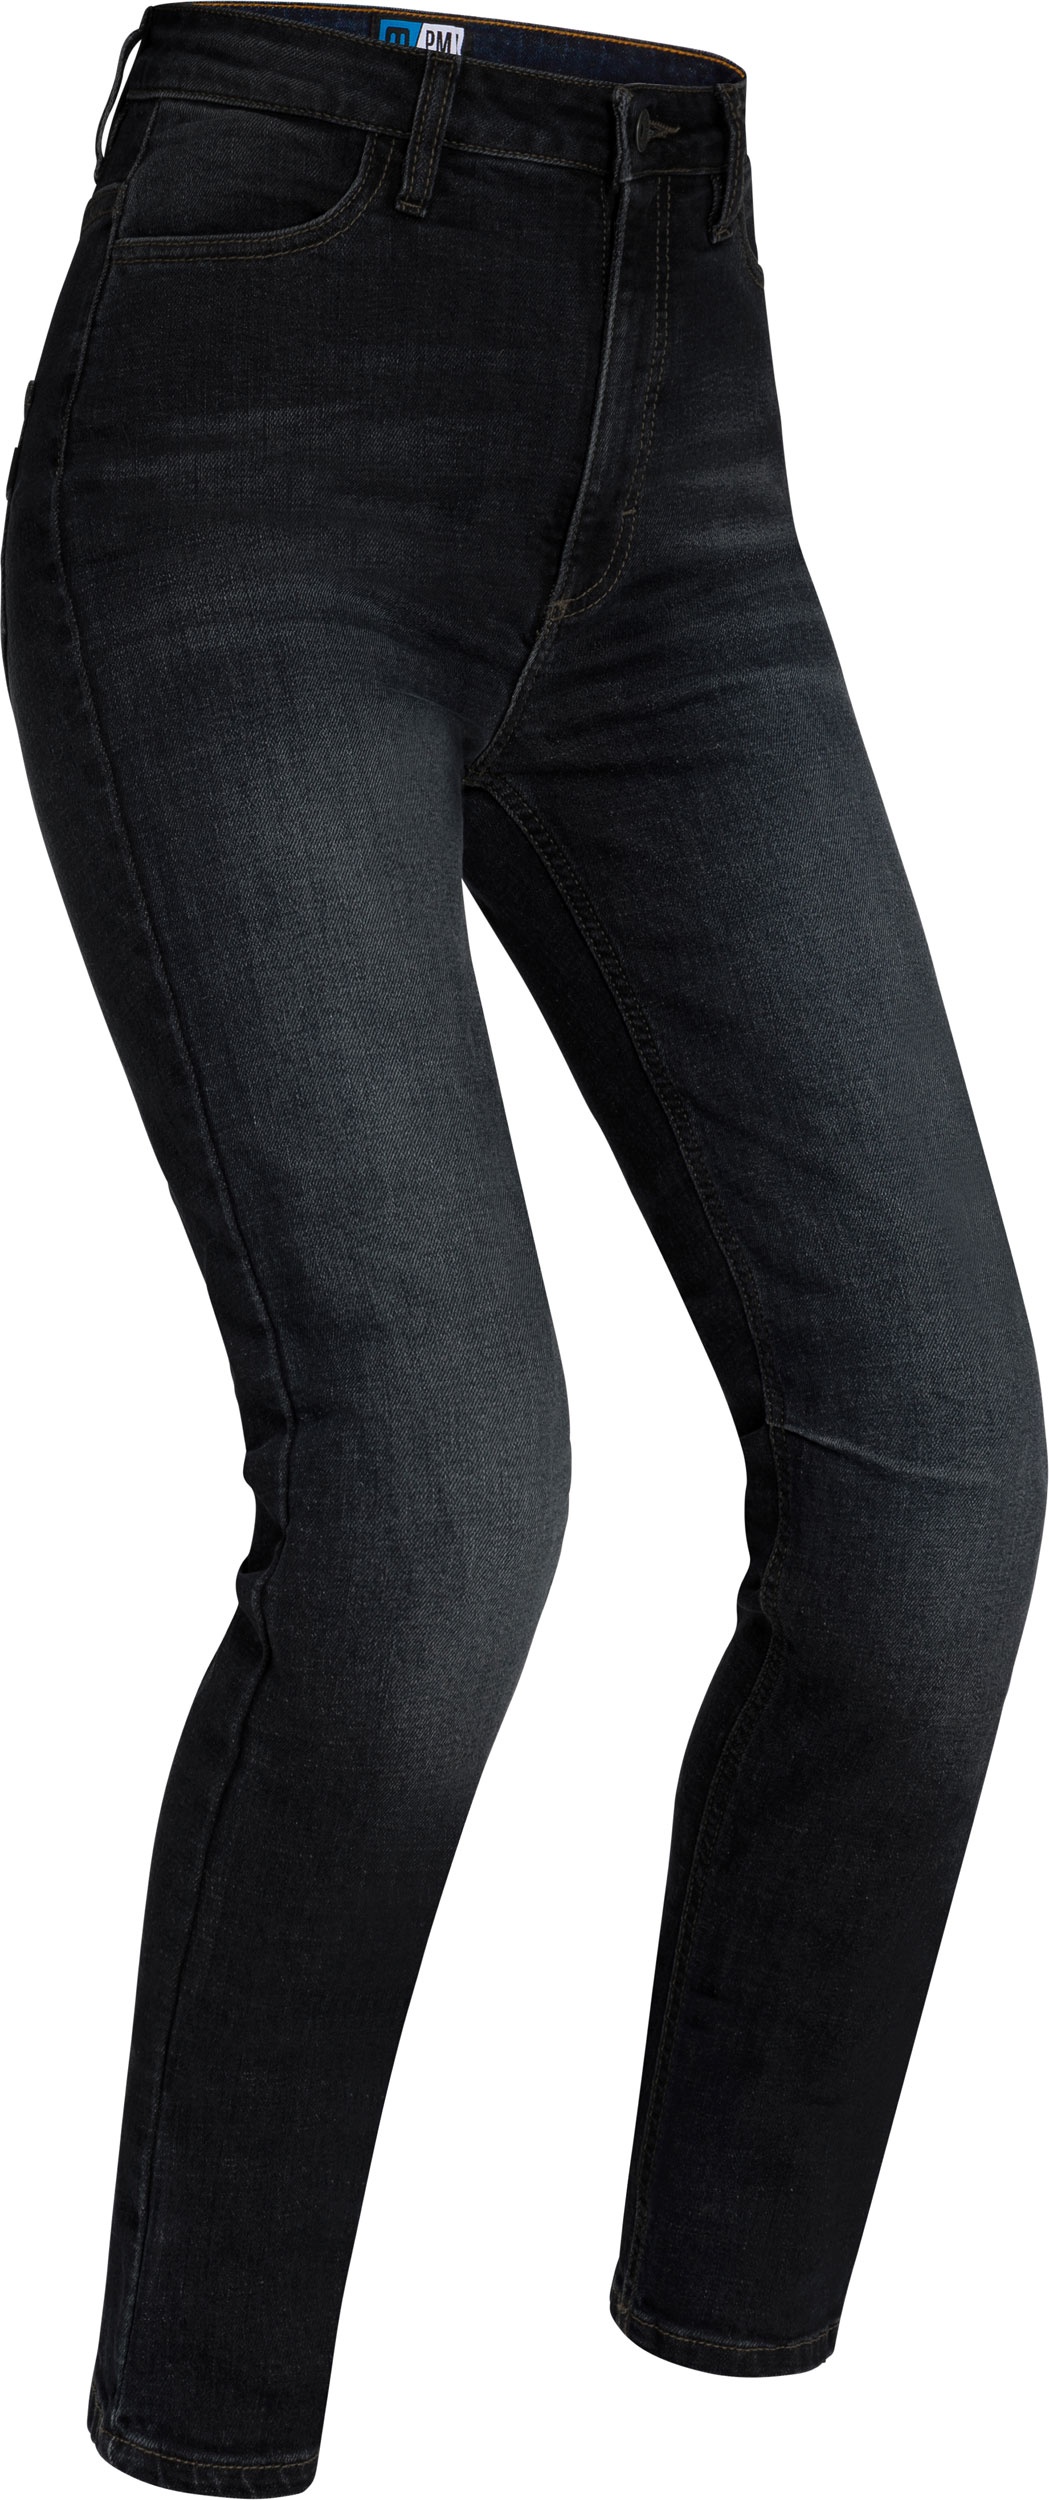 PMJ Sara, jeans femmes - Noir - 32